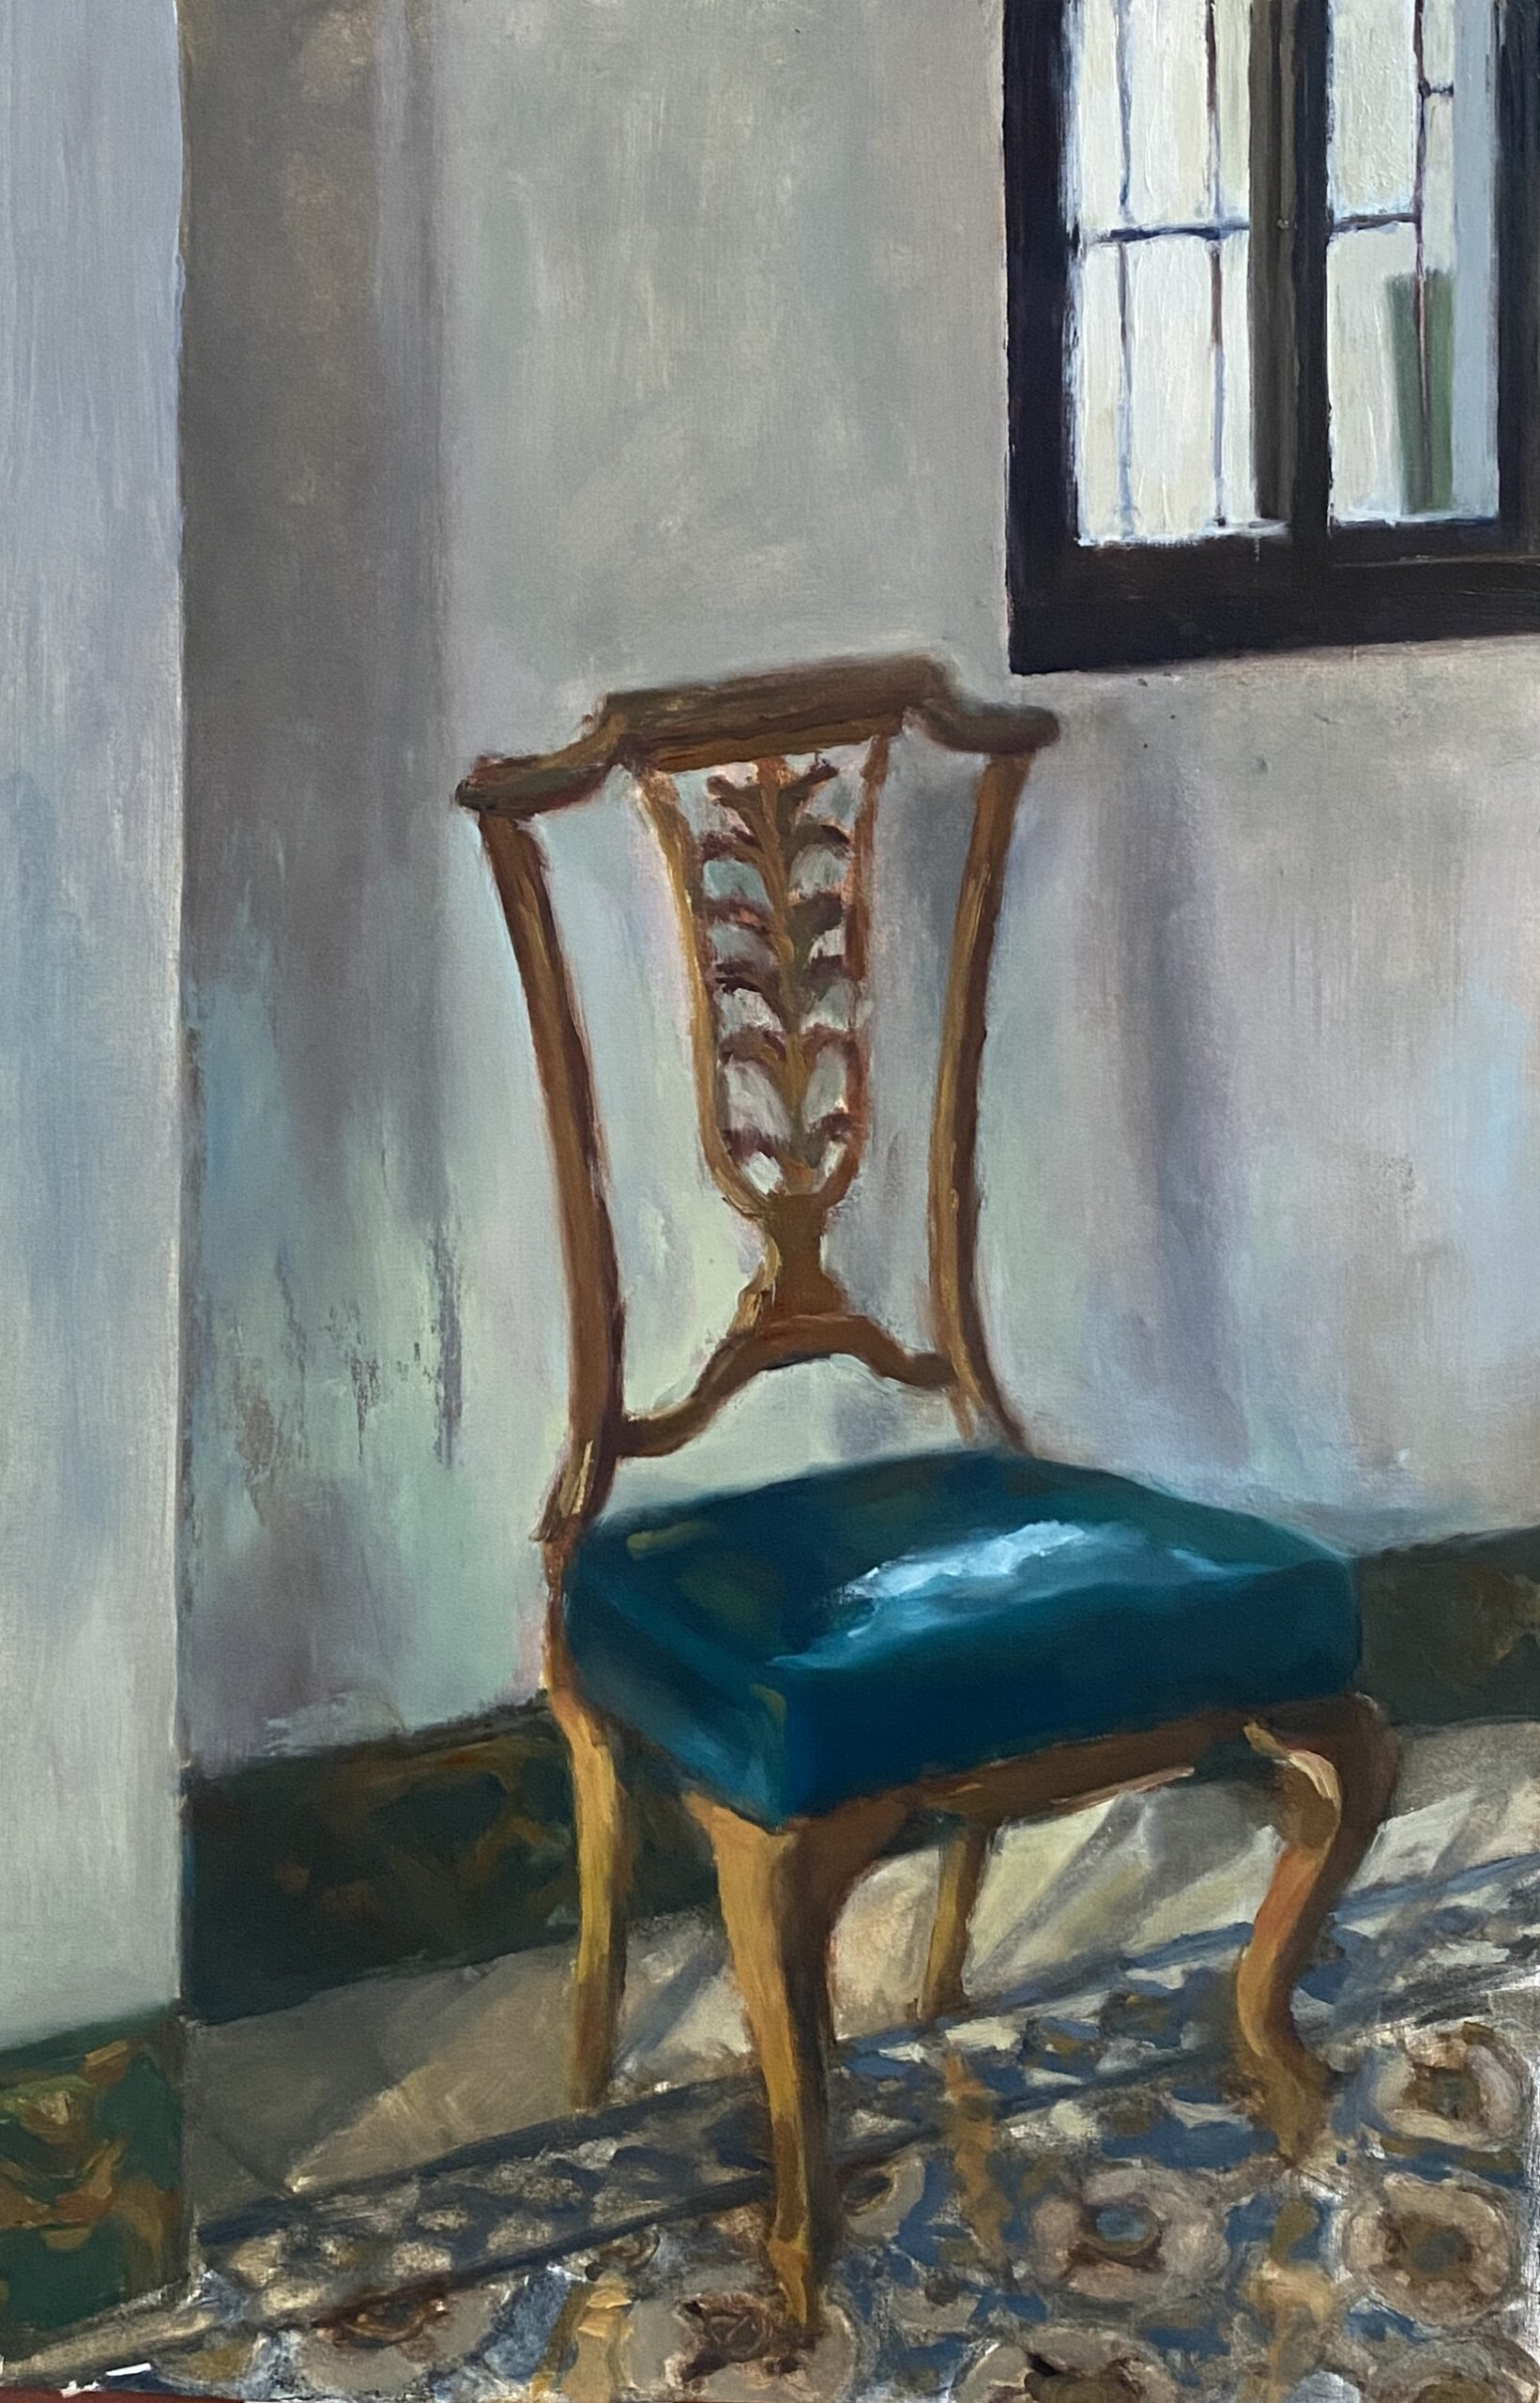 The turqoise chair